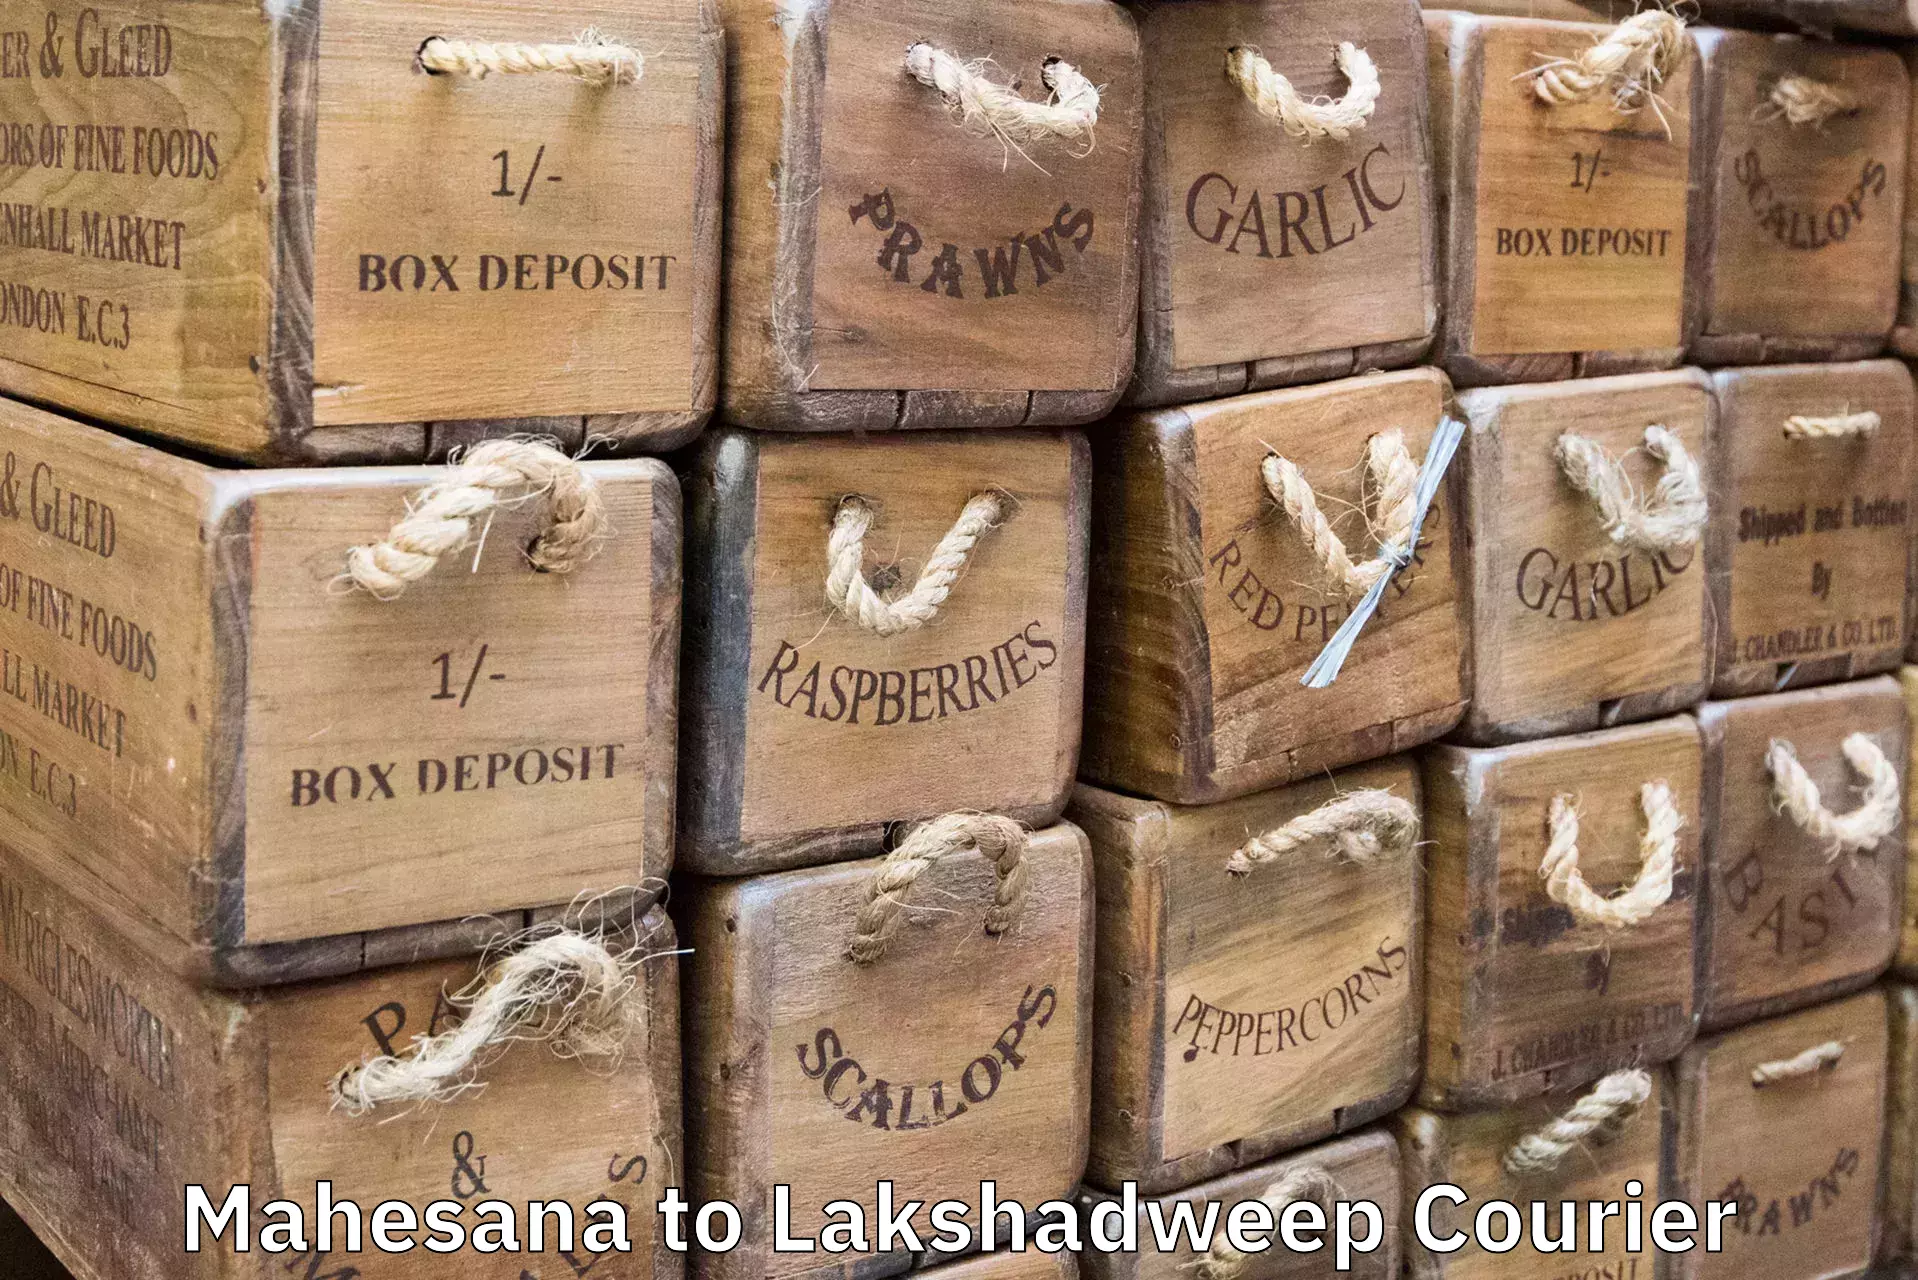 Luggage transport company Mahesana to Lakshadweep